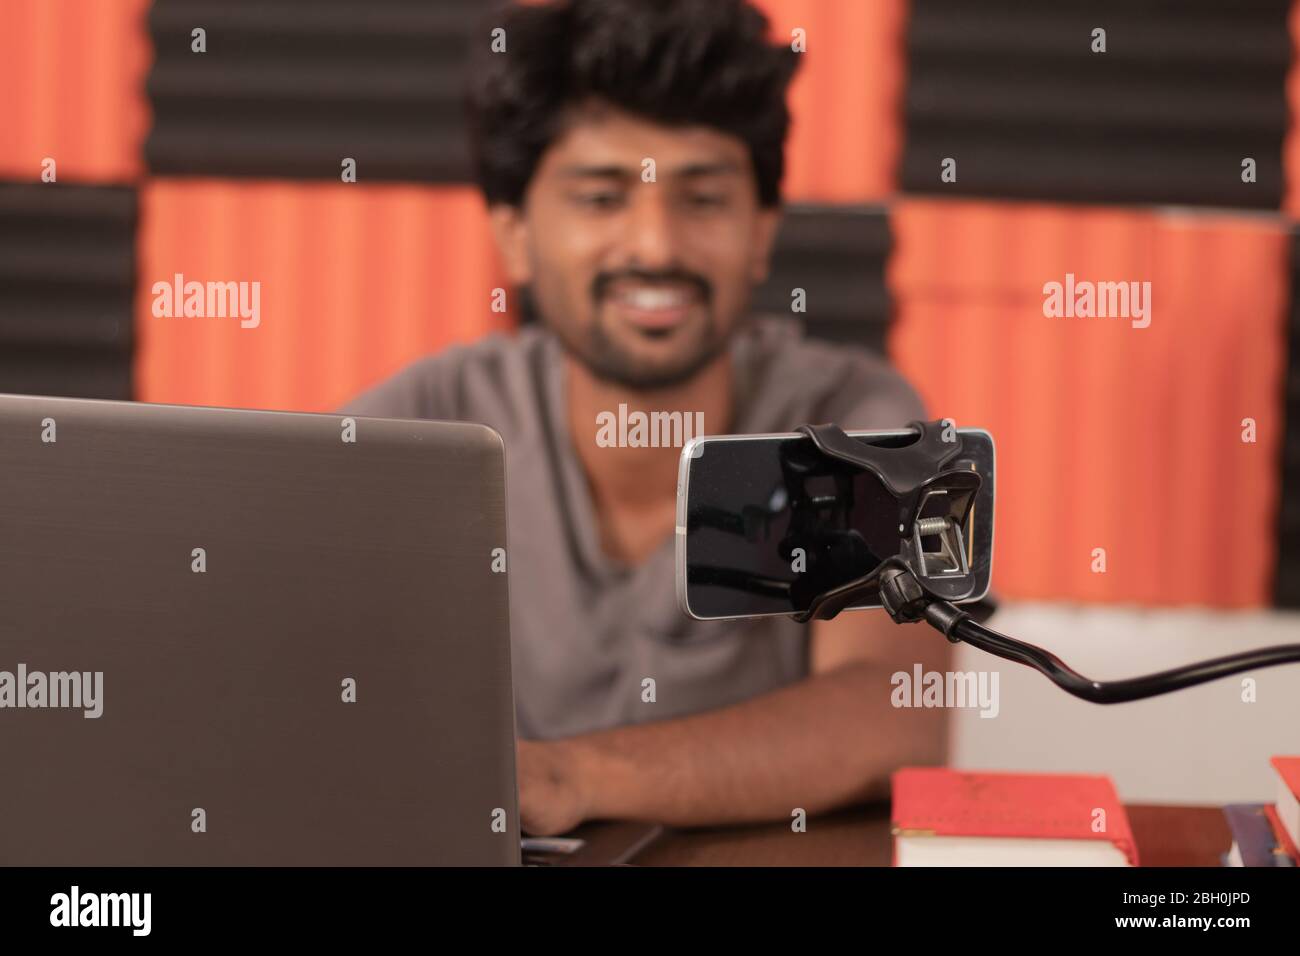 Jeune homme regardant sur mobile occupé dans le chat vidéo avec des amis à la maison pendant covid-19 ou coronavirus pandémie - Smiling blogger avec le tournage d'ordinateur portable Banque D'Images